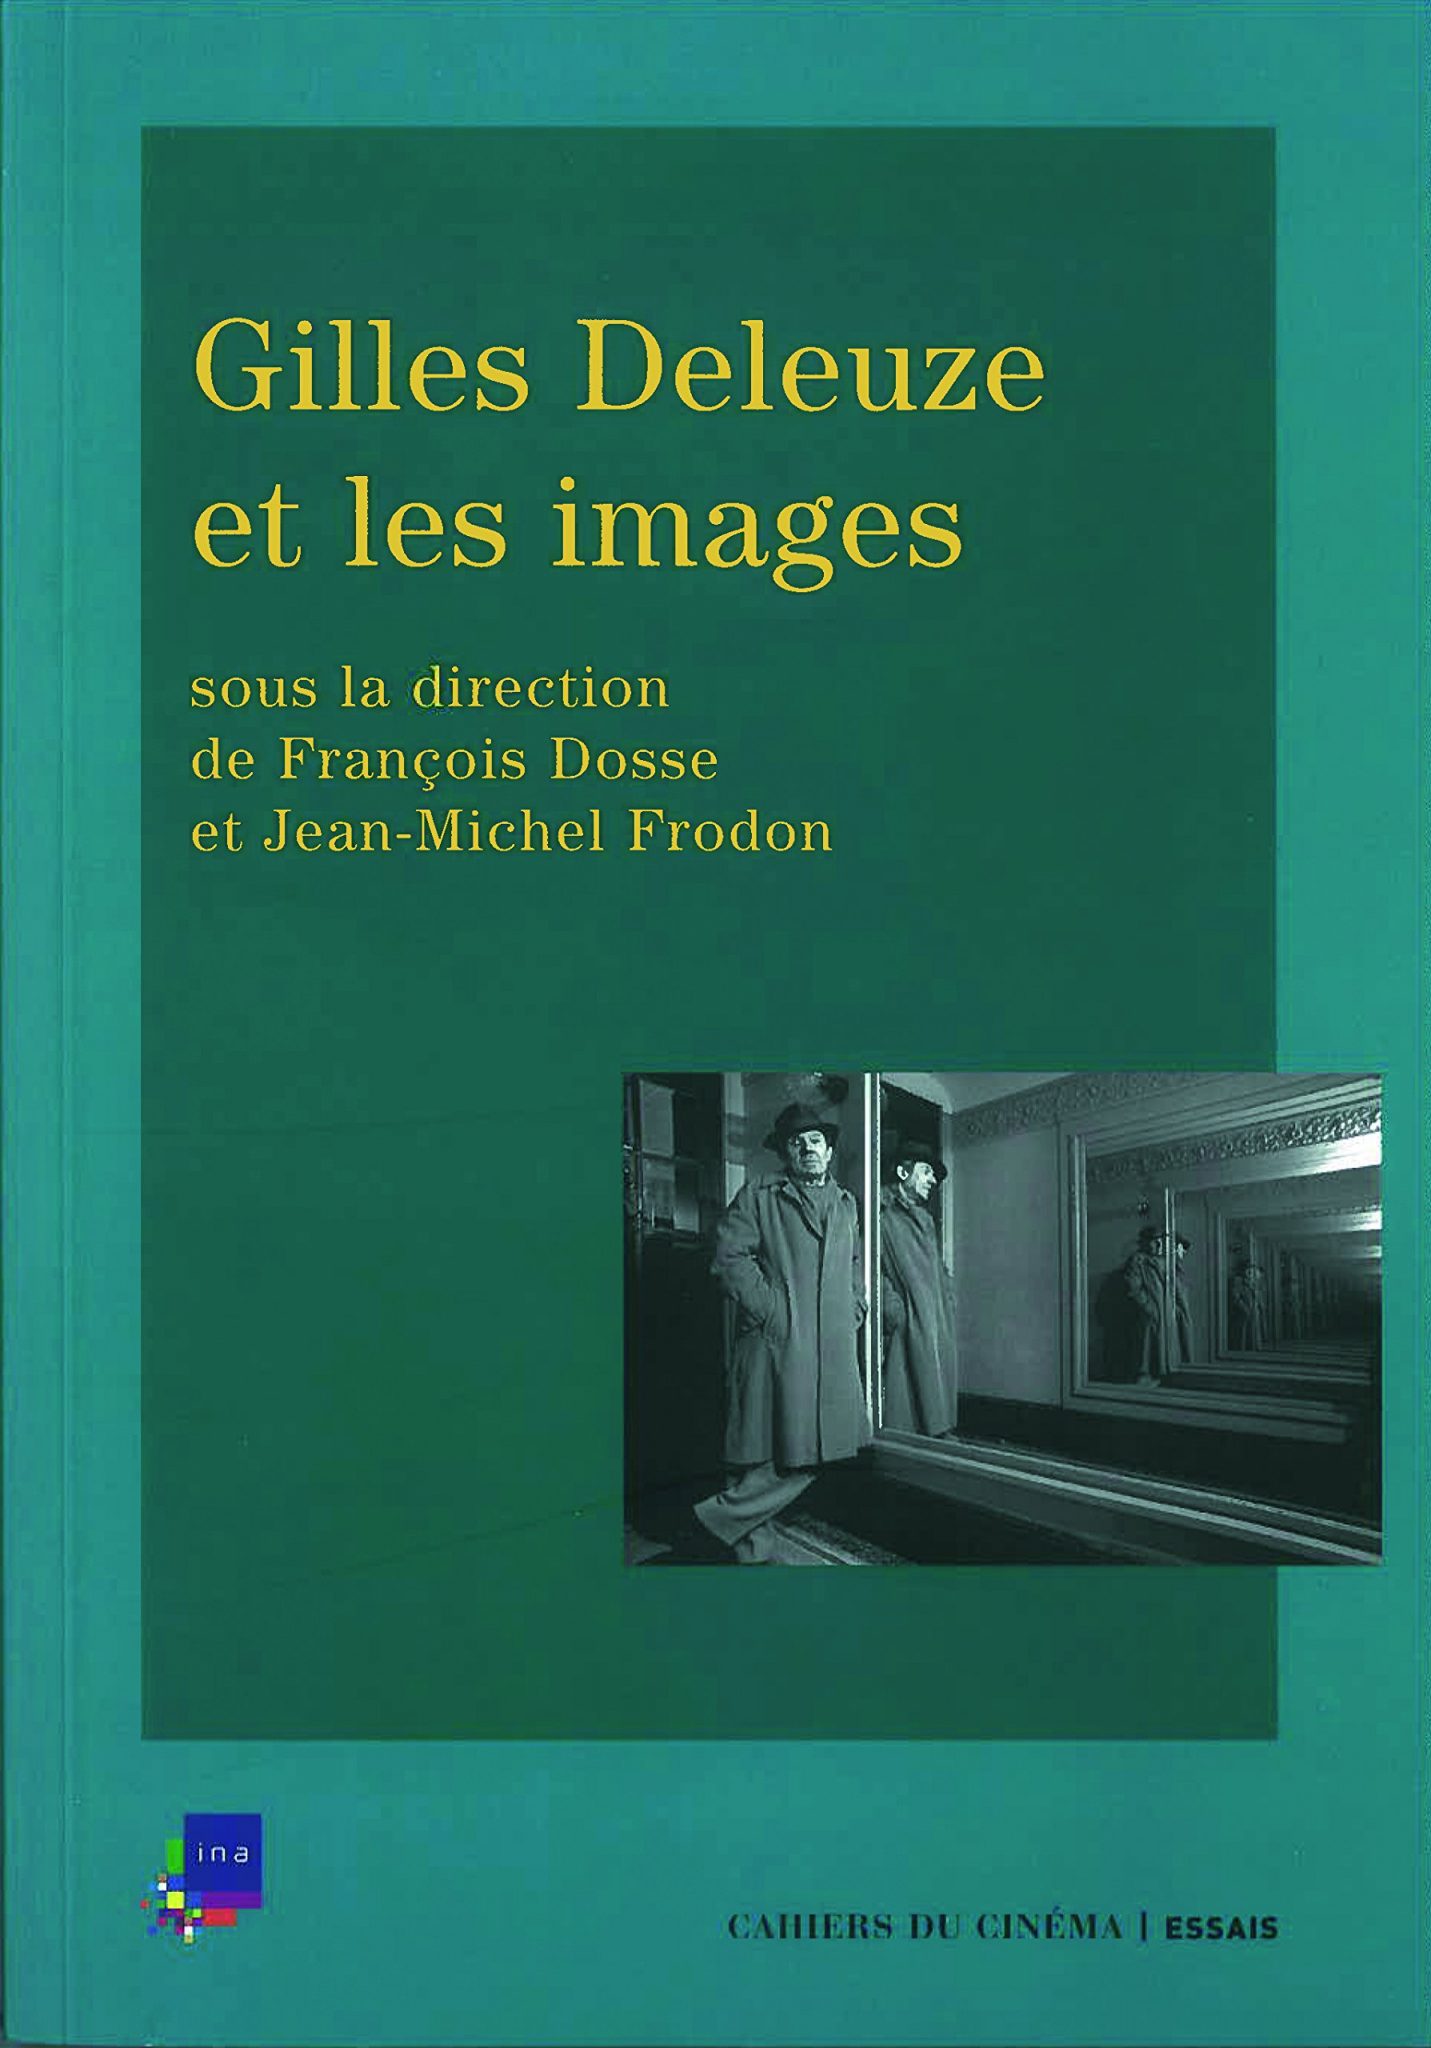 AND - Gilles Deleuze et les images - François Dosse